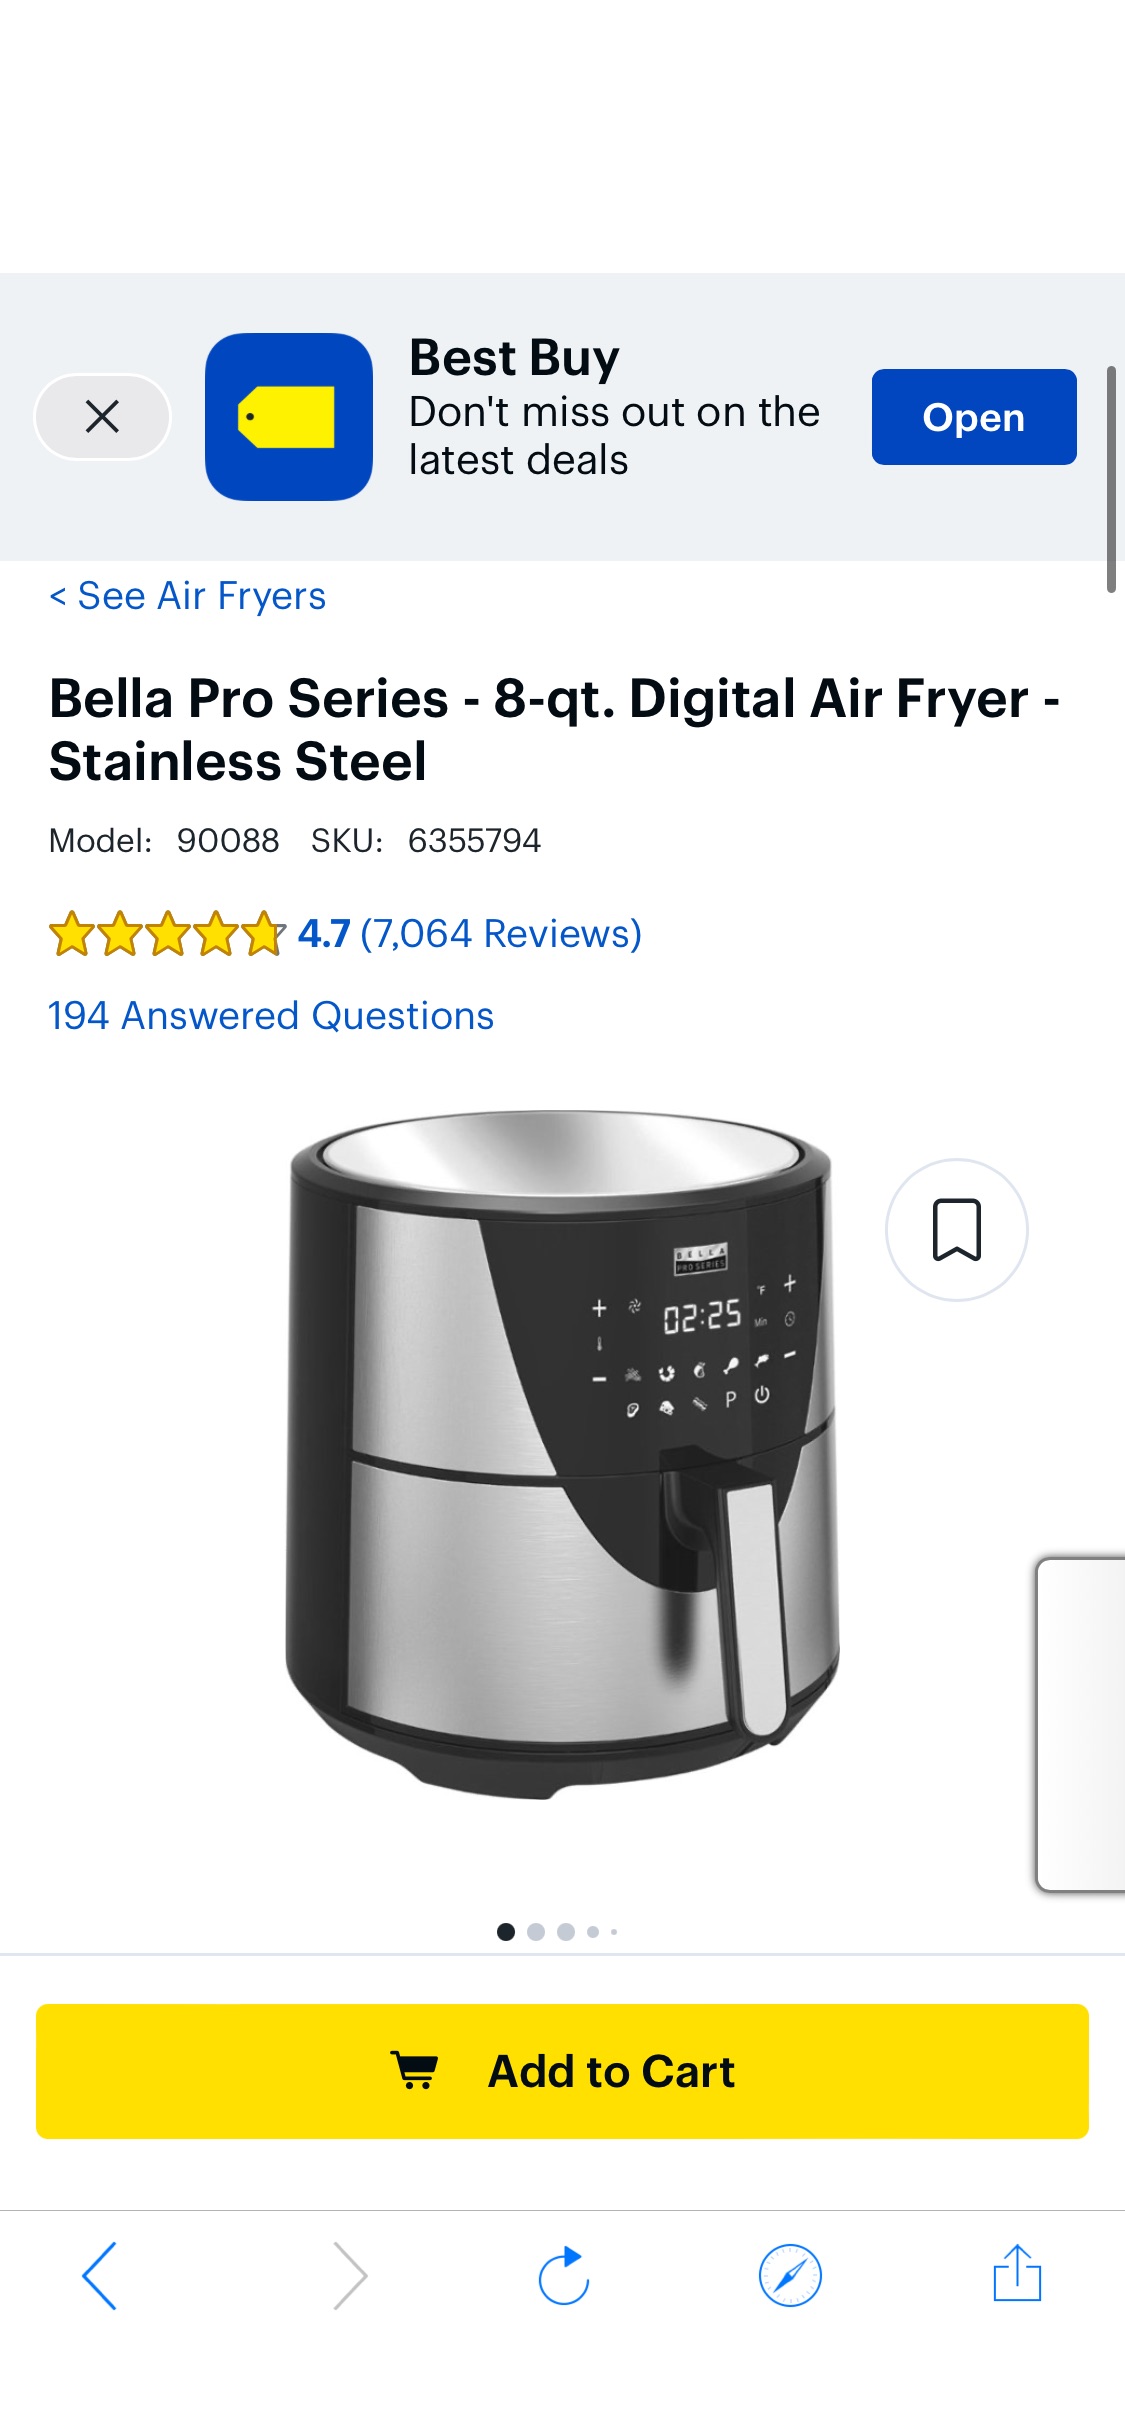 Bella Pro Series 8-qt. Digital Air Fryer Stainless Steel 90088 - Best Buy空气炸锅